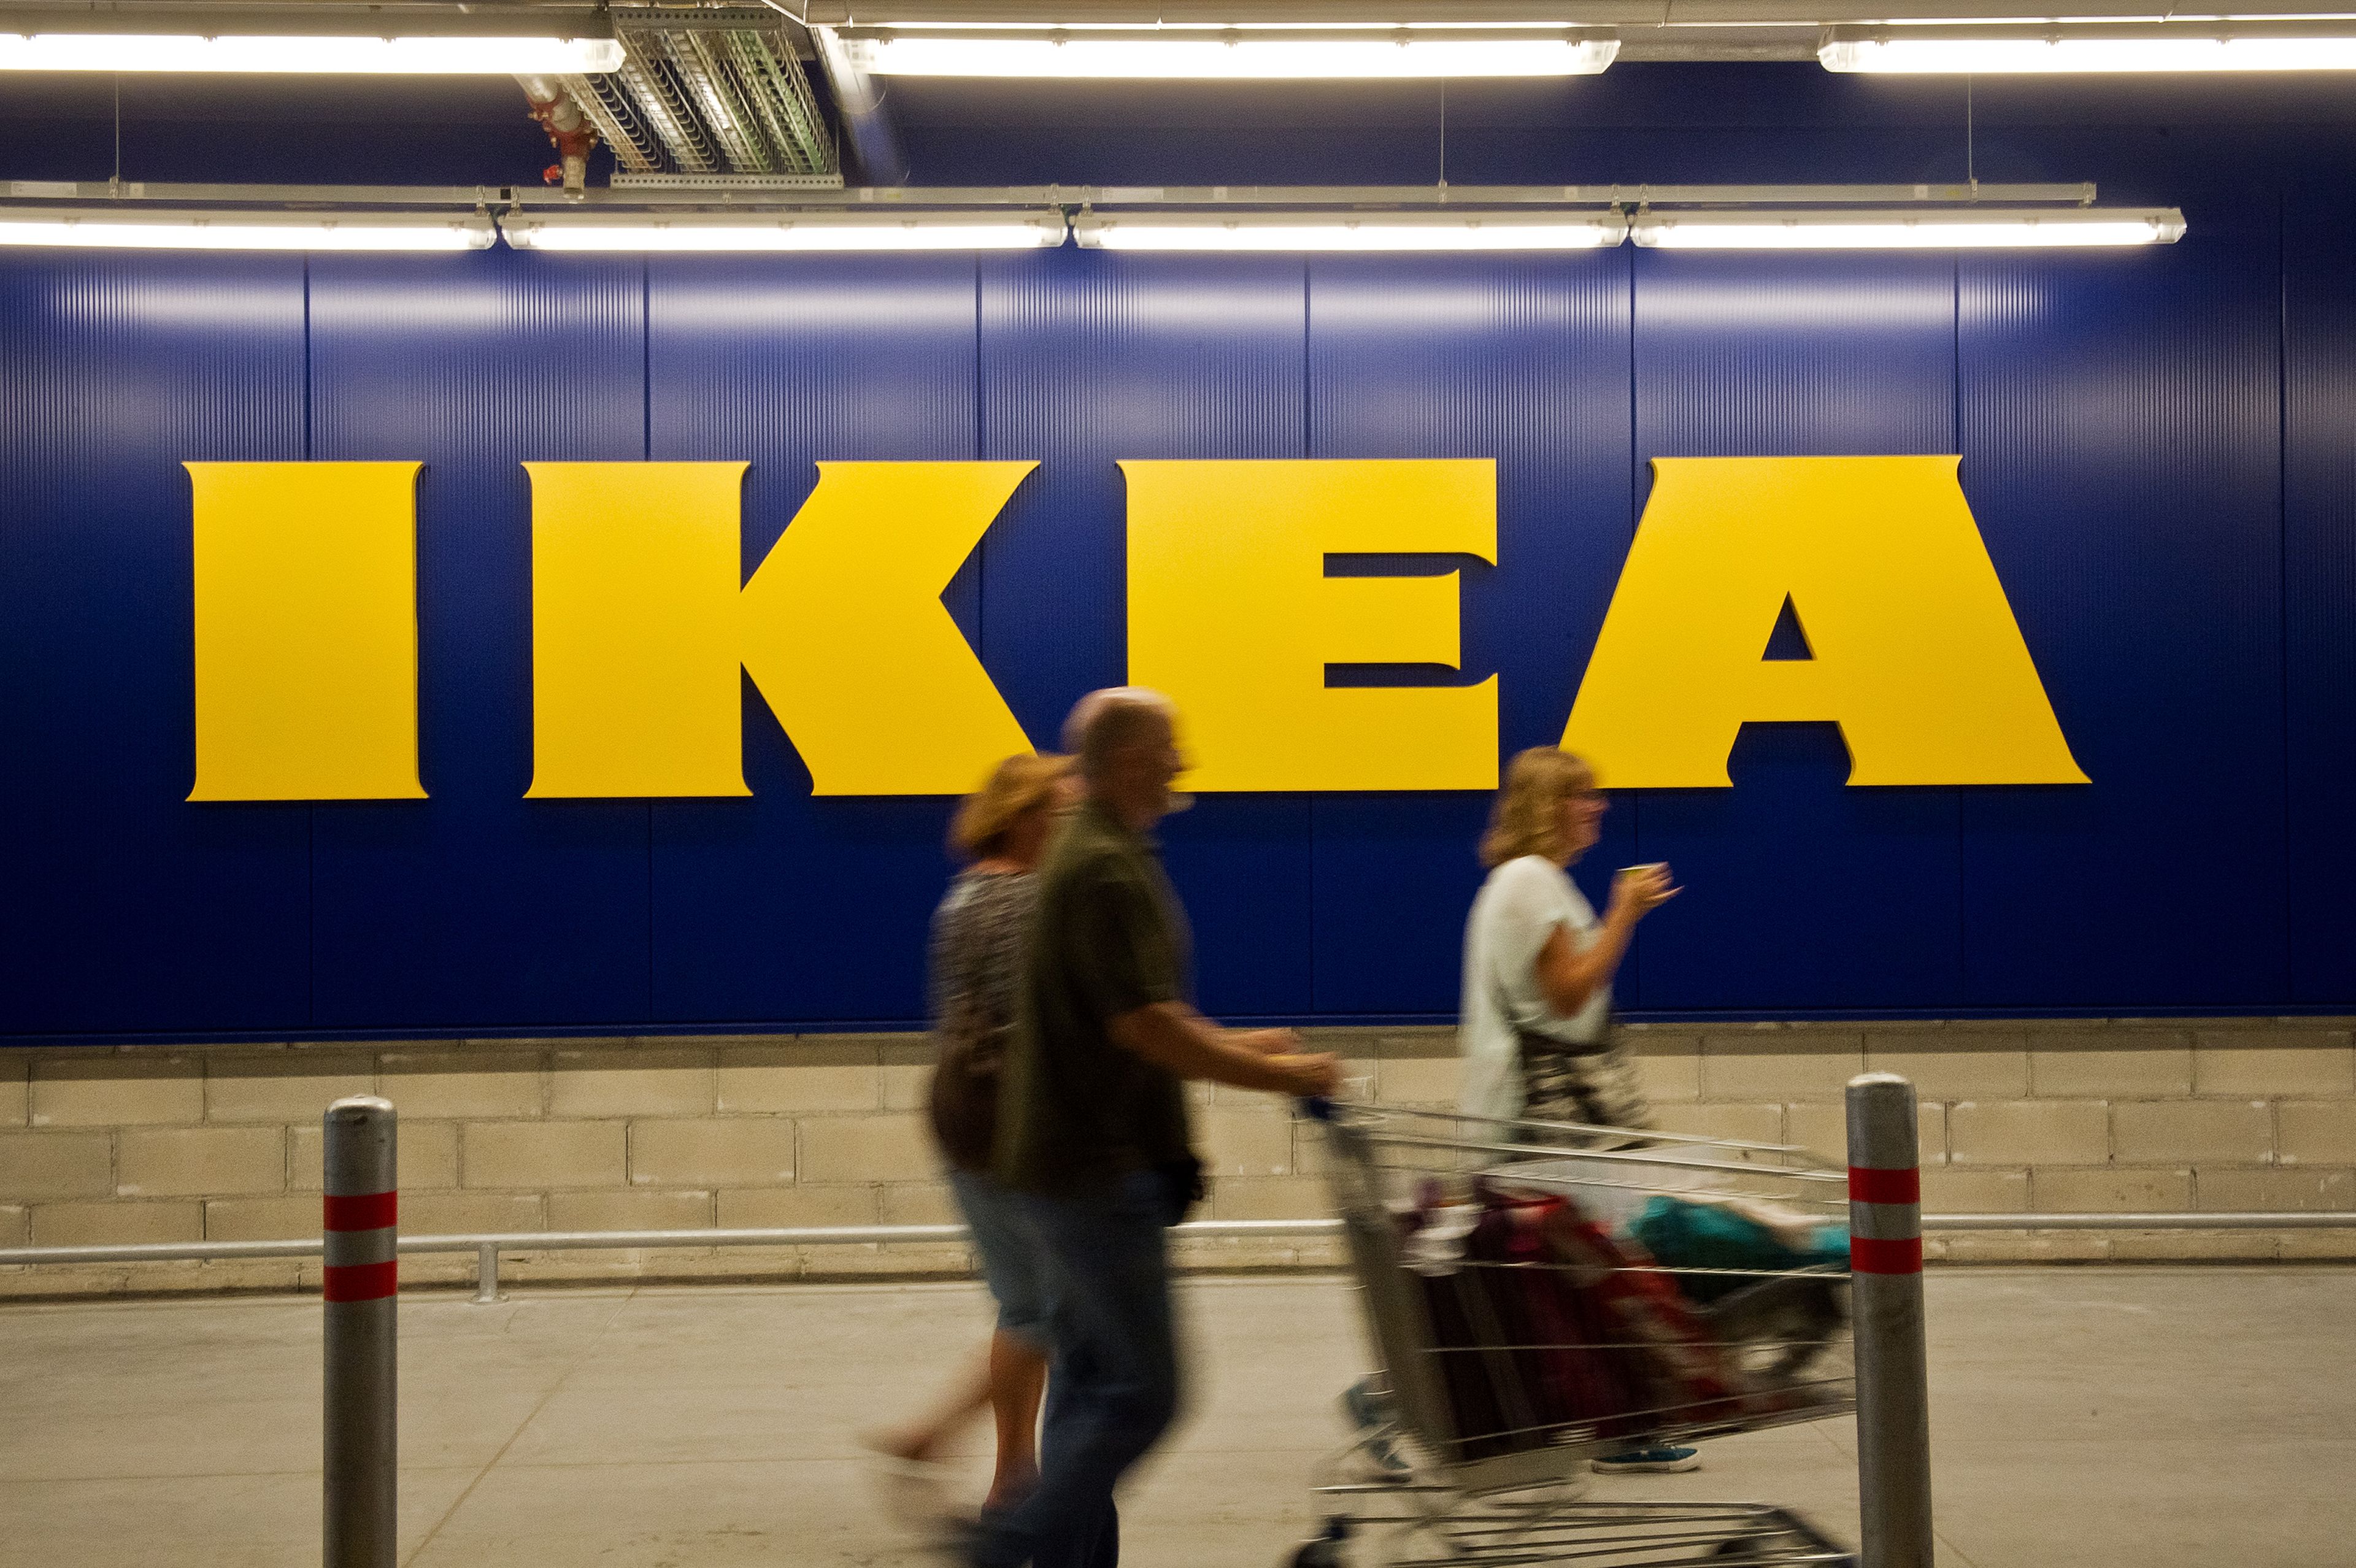 En imagen, clientes en una tienda Ikea.